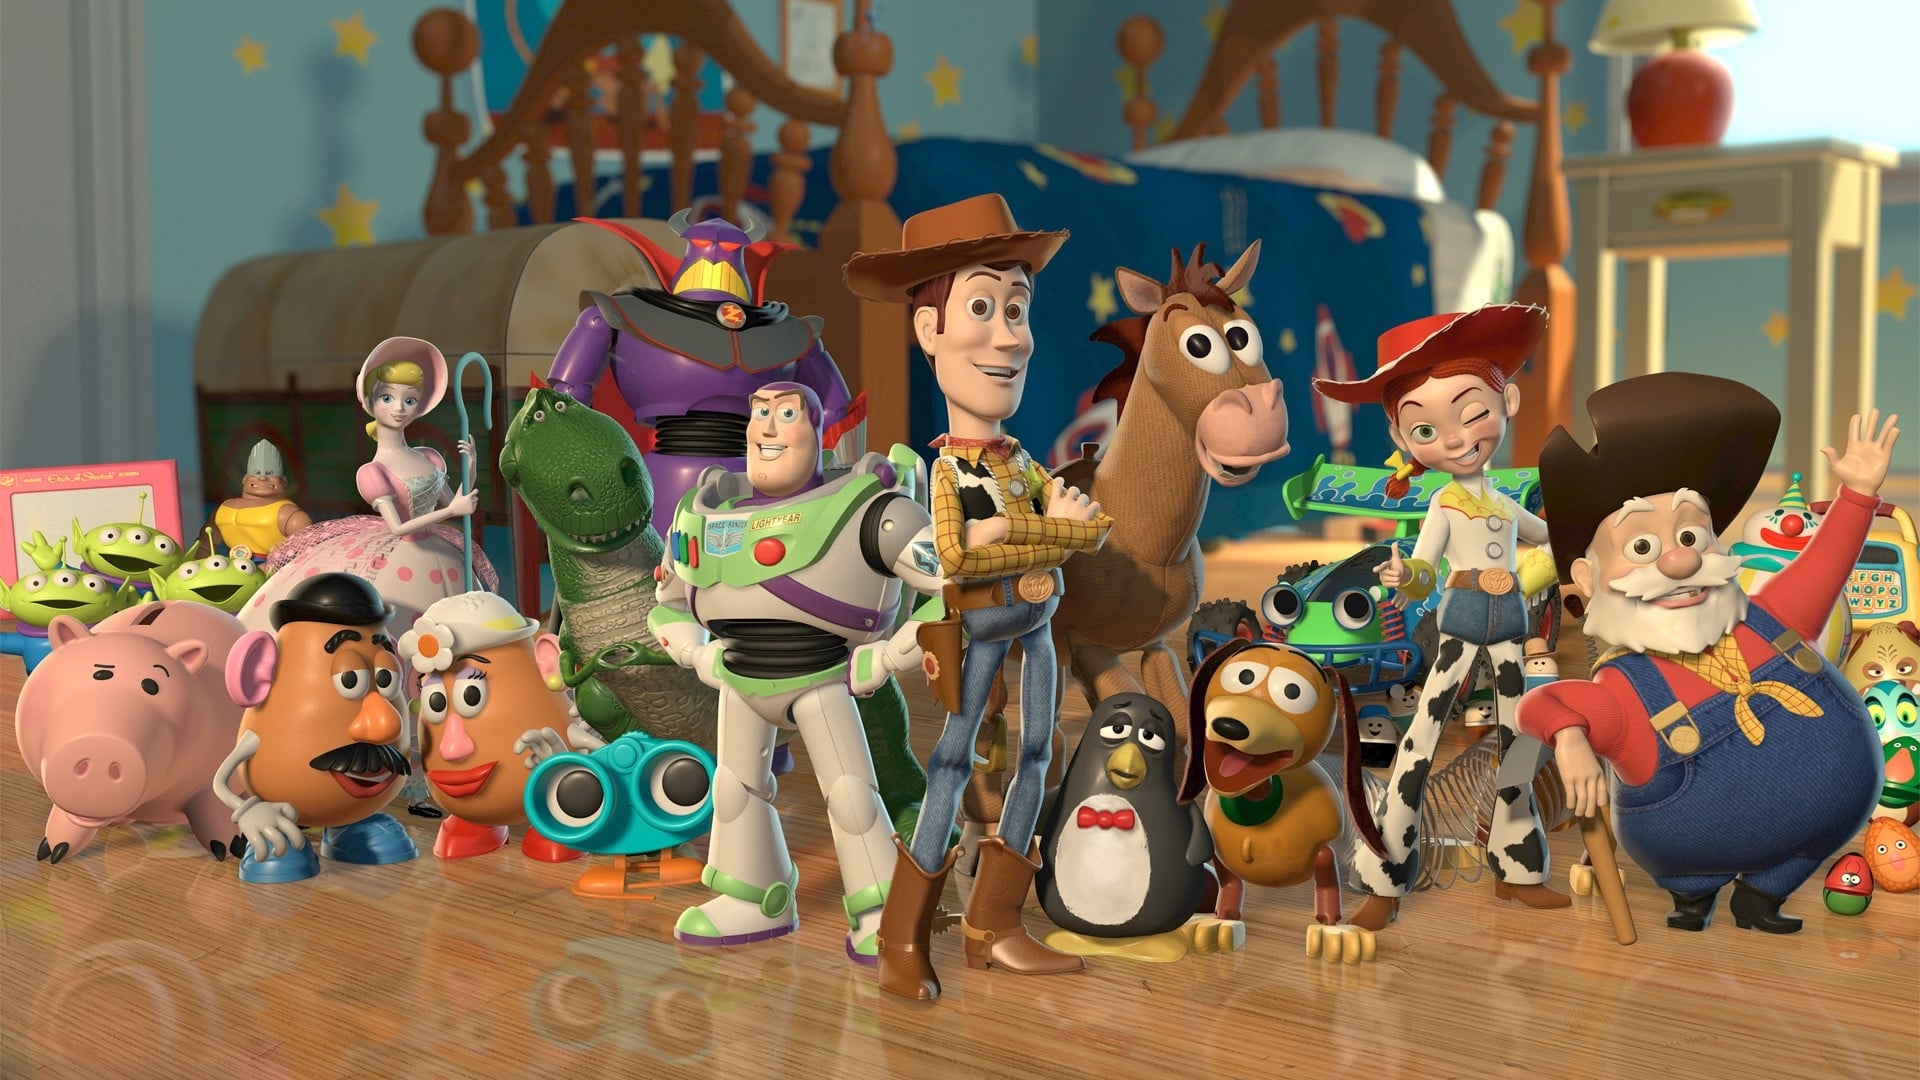 Poster Phim Câu Chuyện Đồ Chơi 2 (Toy Story 2)